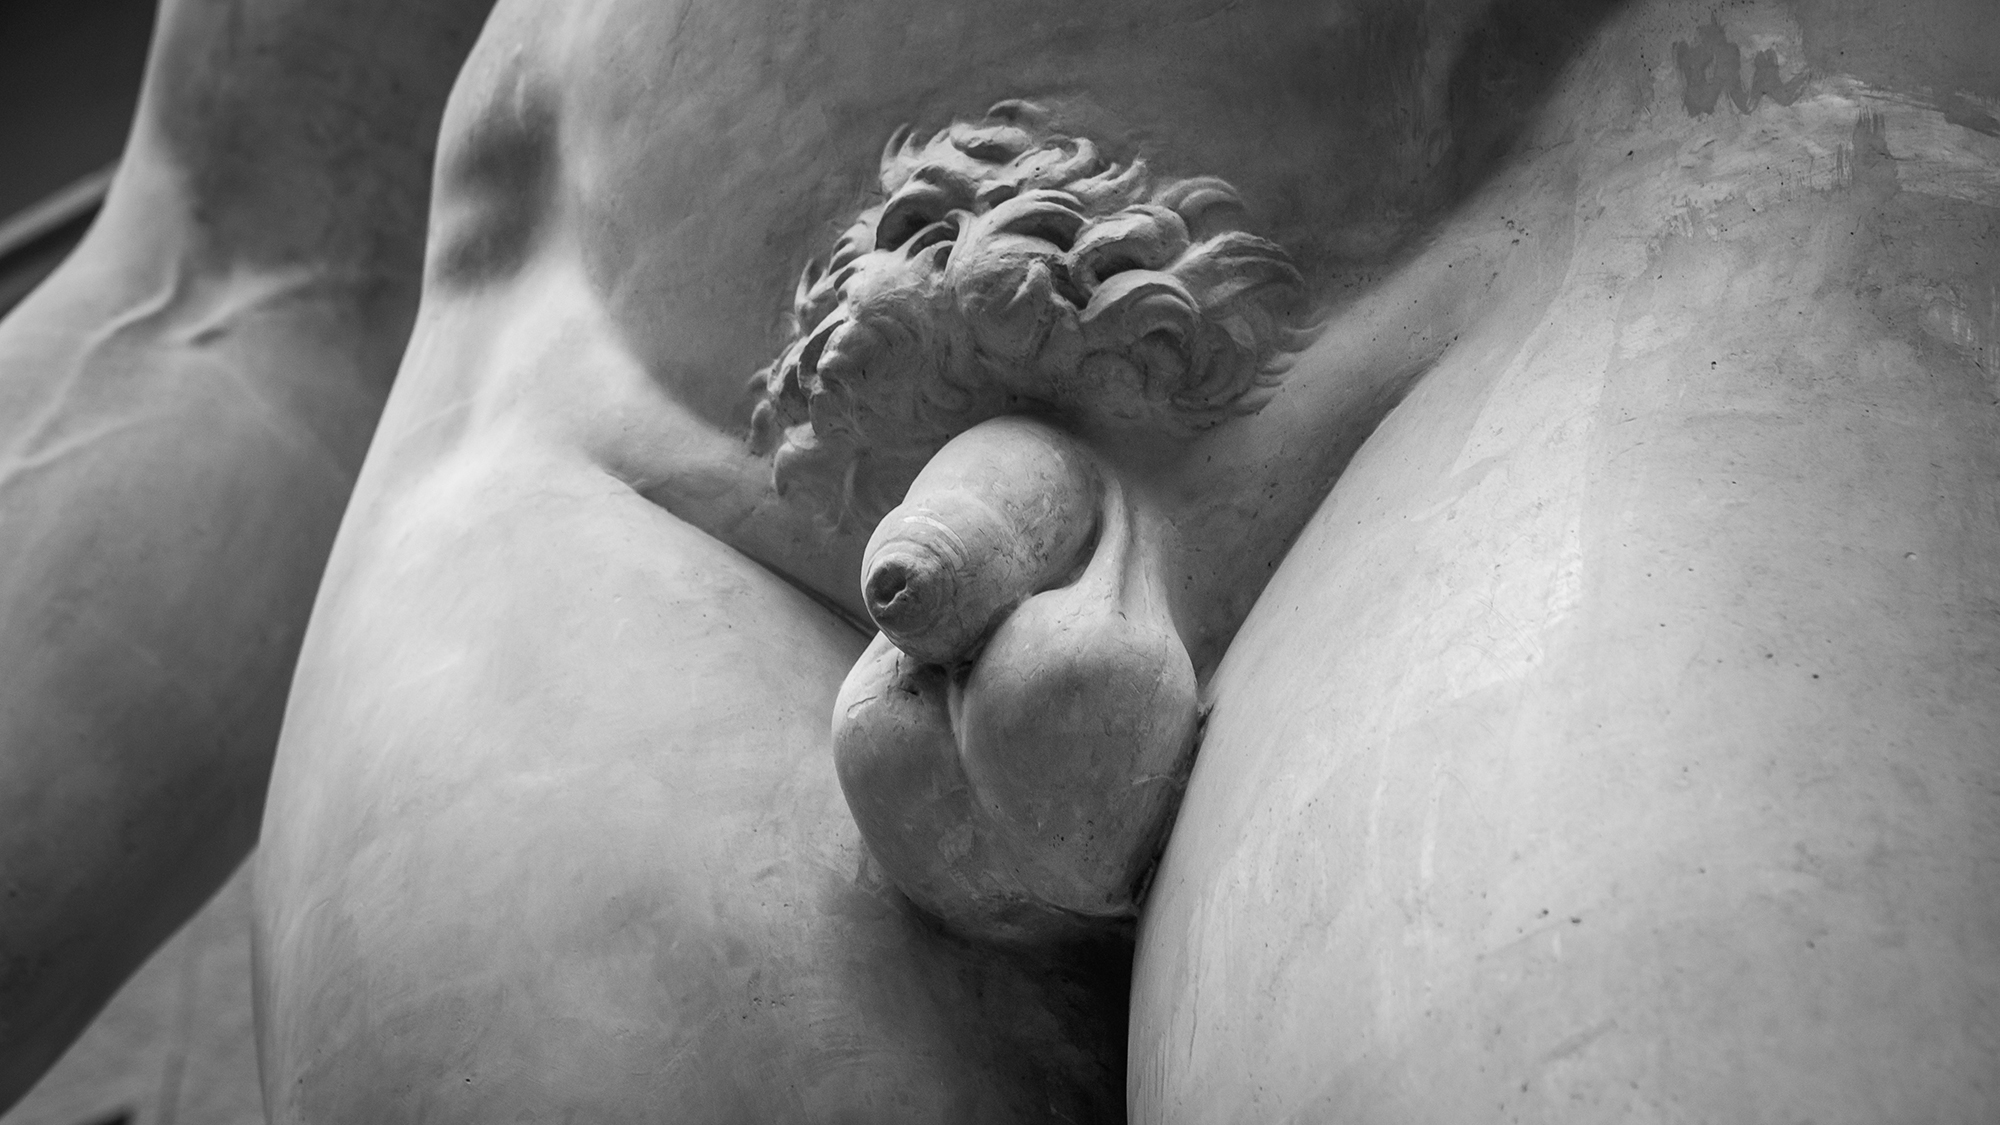 Männliche Geschlechtsteile einer Statue